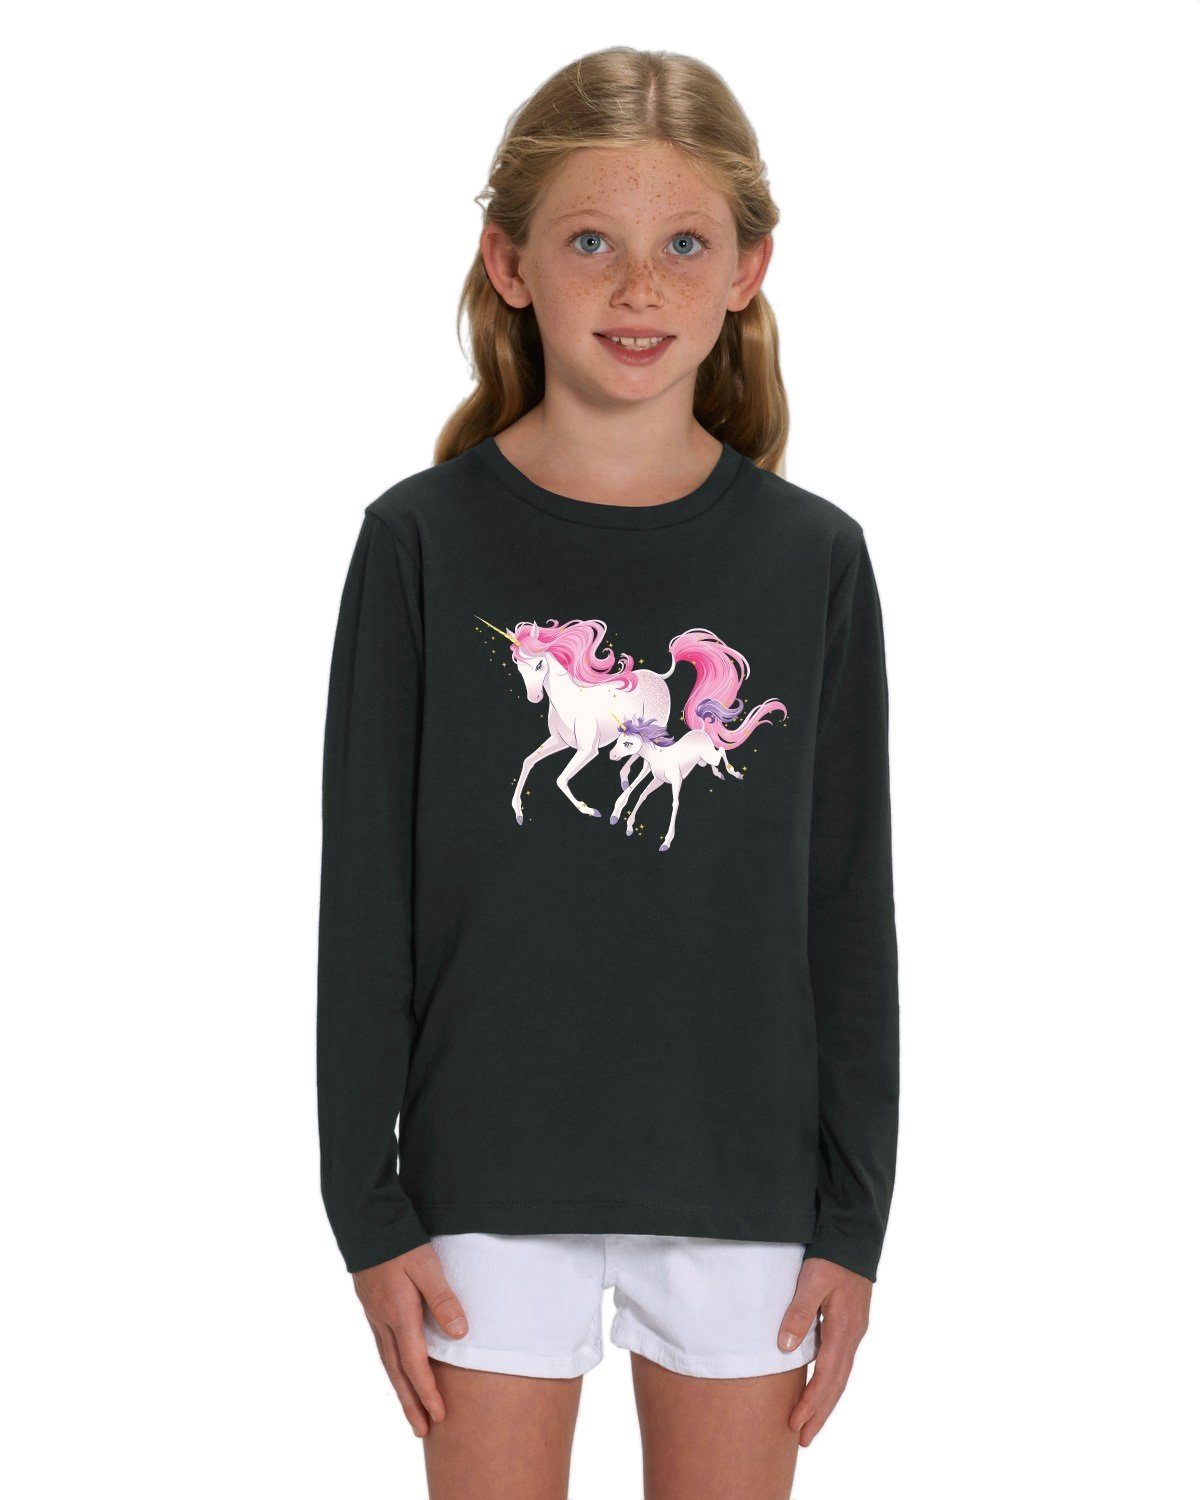 Hilltop Print-Shirt Hochwertiges Kinder Mädchen Langarm T-Shirt aus 100%  Bio Baumwolle mit wunderschönem Einhorn Motiv, Premium Kinder Tshirt für  Freizeit und Sport